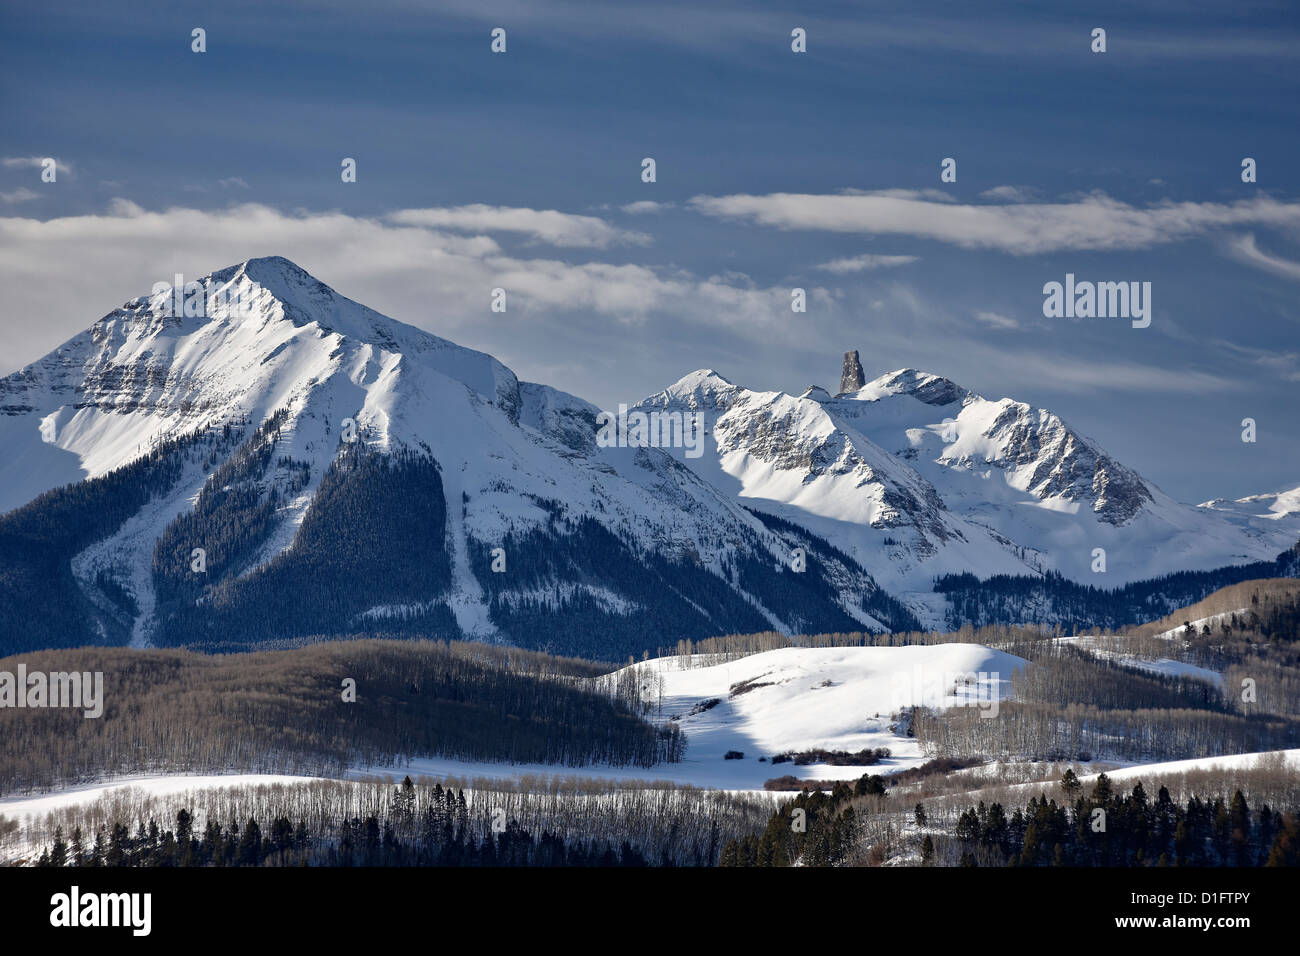 Testa di lucertola in inverno, Uncompahgre National Forest, Colorado, Stati Uniti d'America, America del Nord Foto Stock